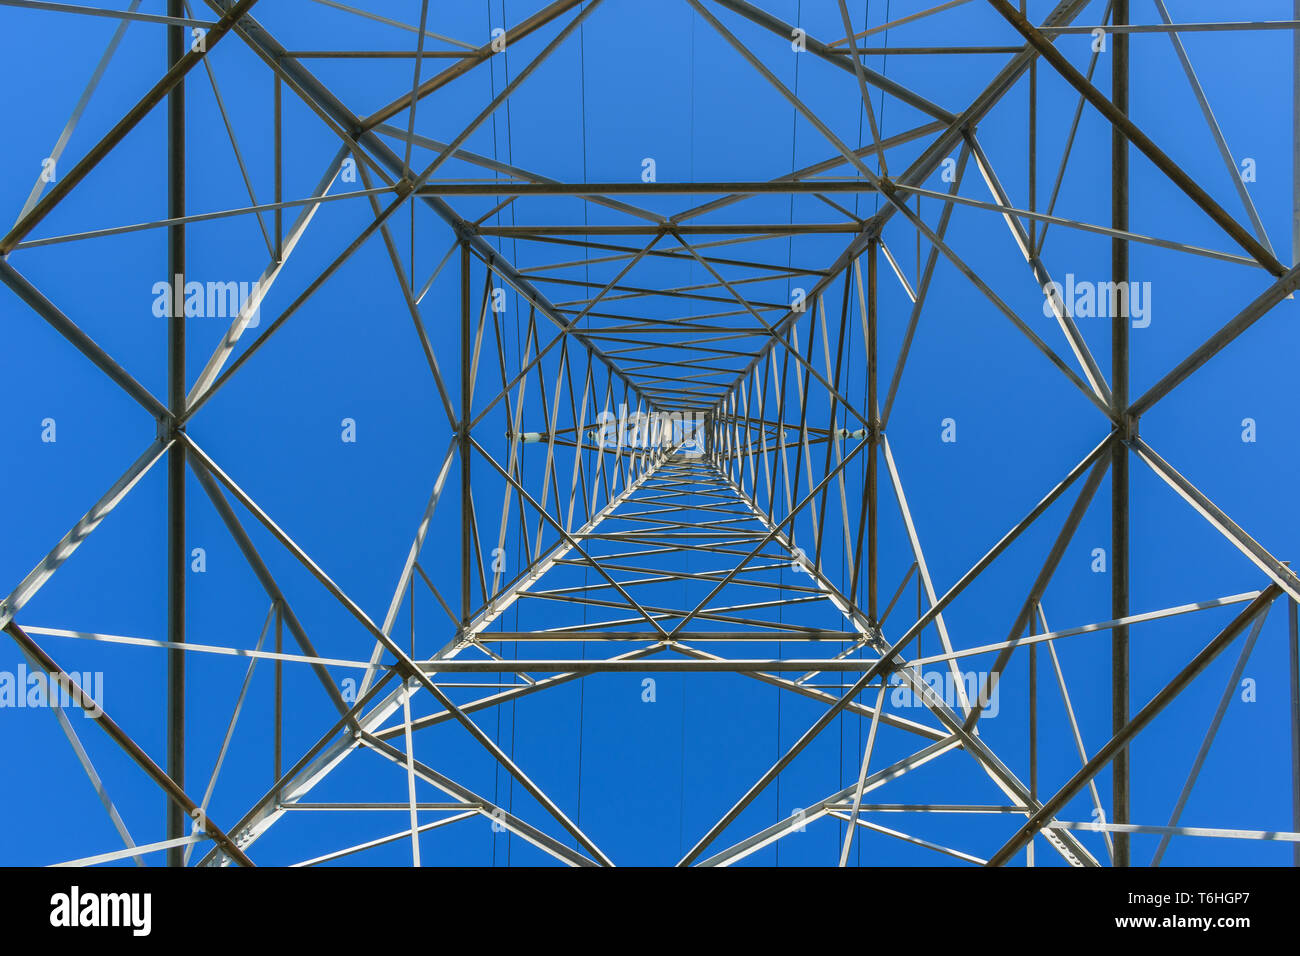 Hohe Spannung Strommast Blick von unten, blauer Himmel Stockfoto